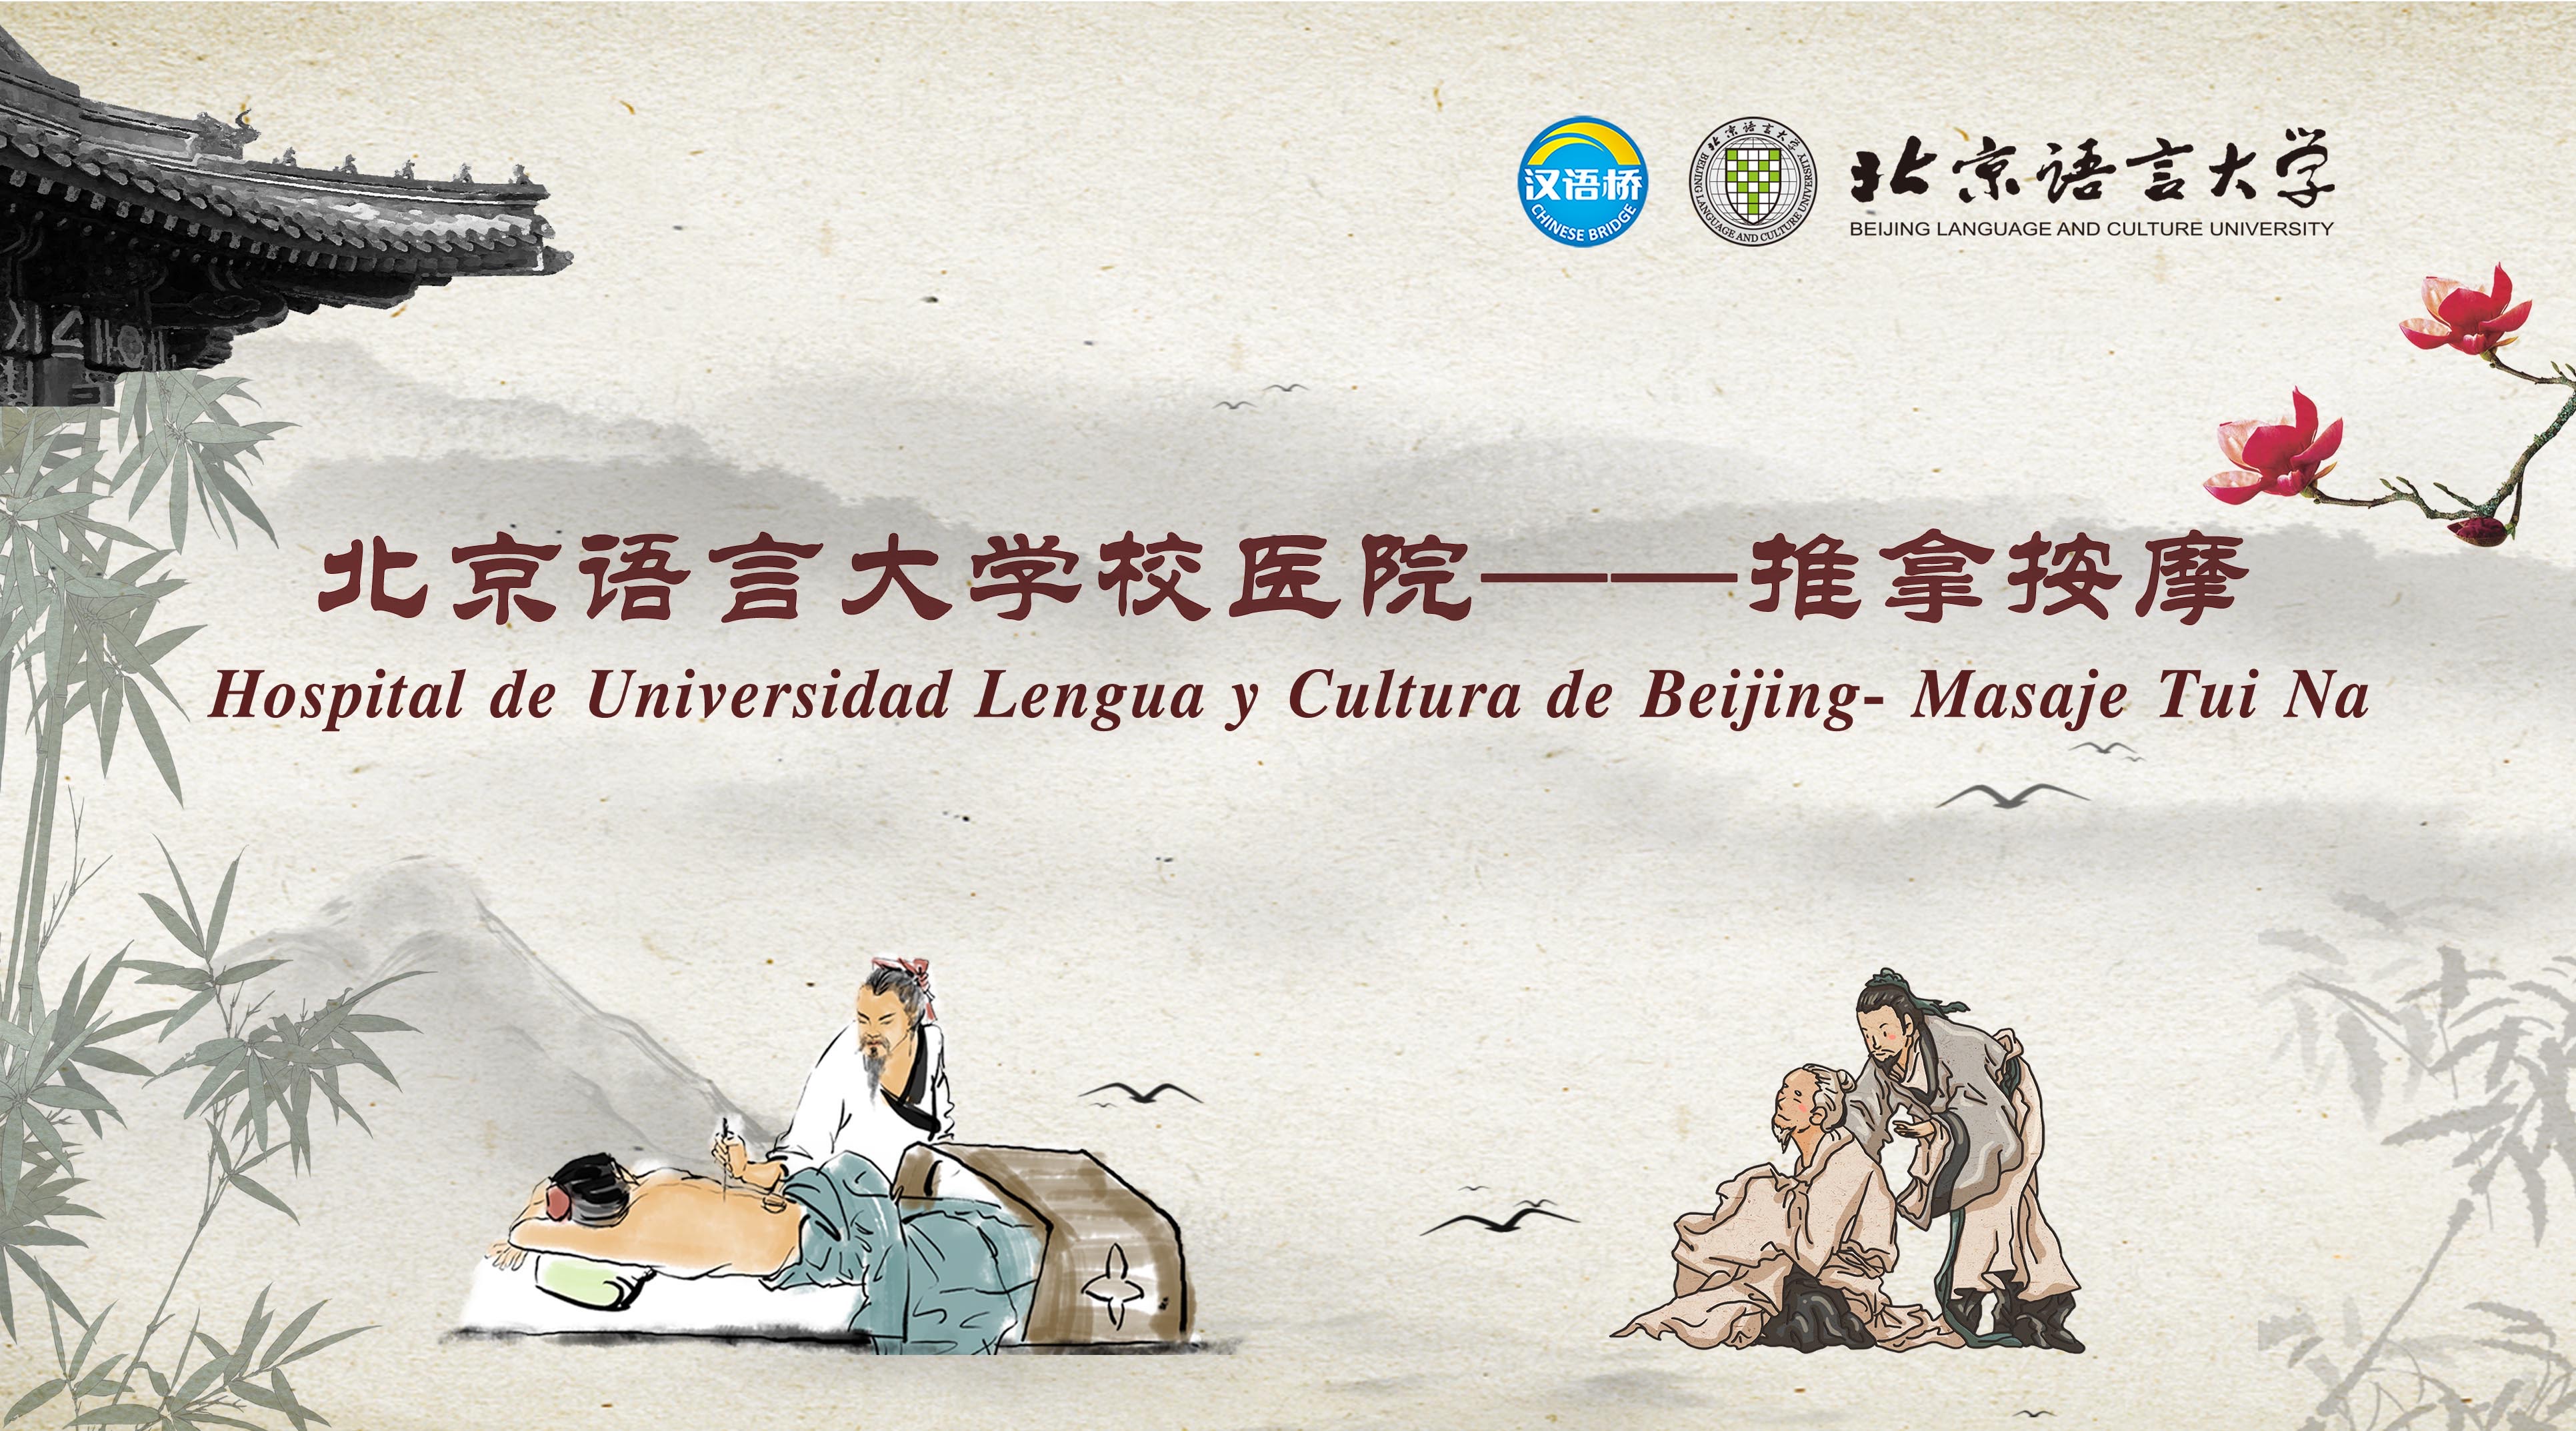 Hospital de Universidad Lengua y Cultura de Beijing- Masaje Tui Na